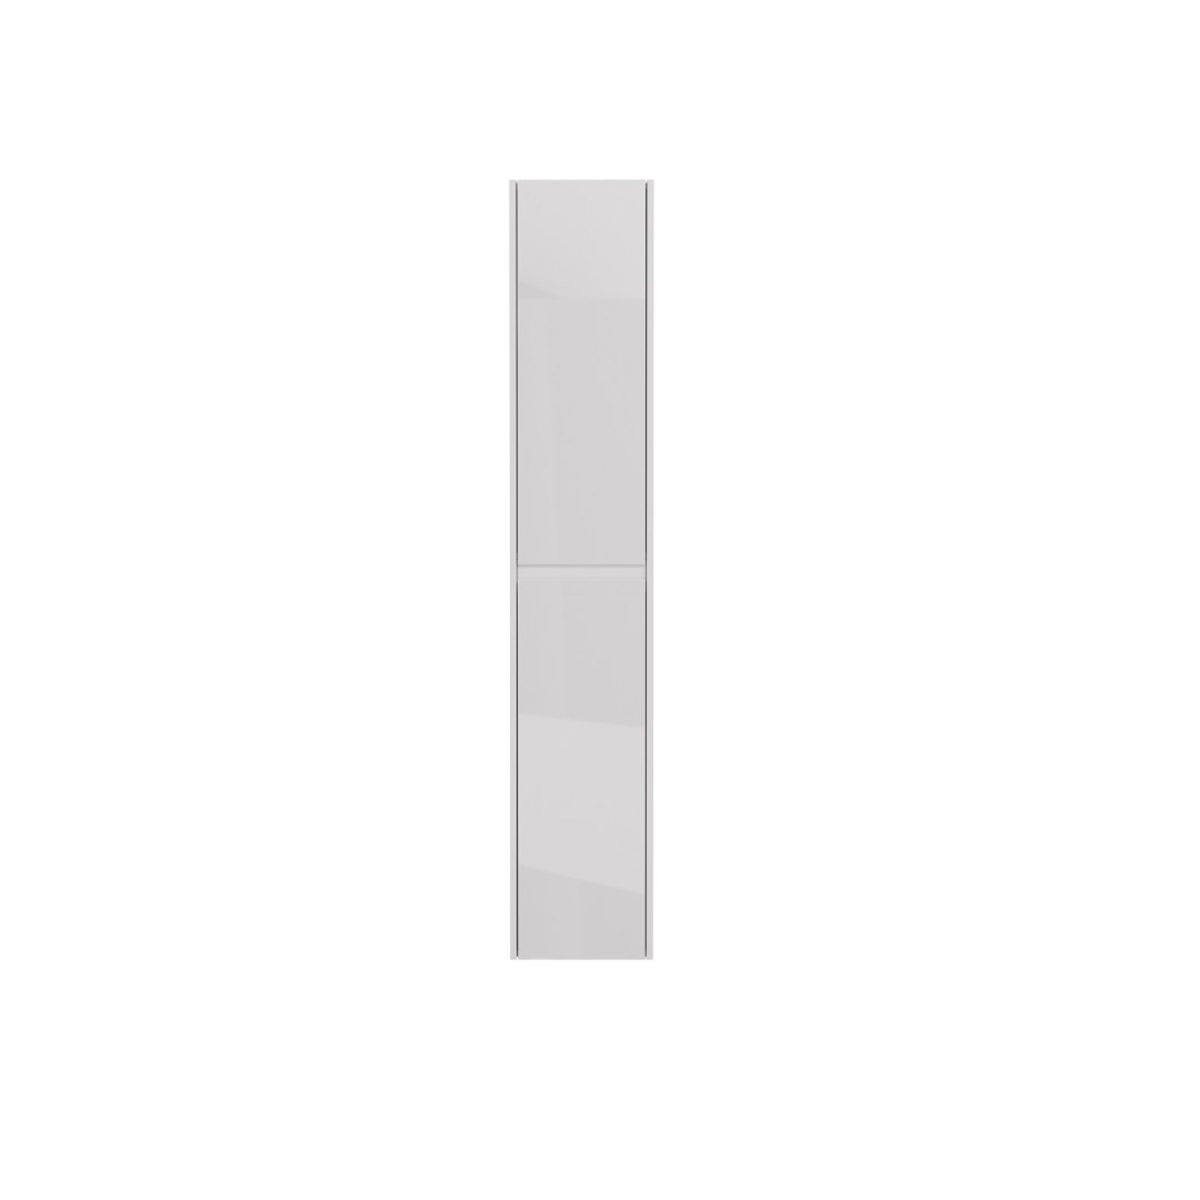 Пенал Lemark COMBI 35 см подвесной/напольный, 2-х дверный, открывание лев/прав, цвет корпуса, фасада: Белый глянец